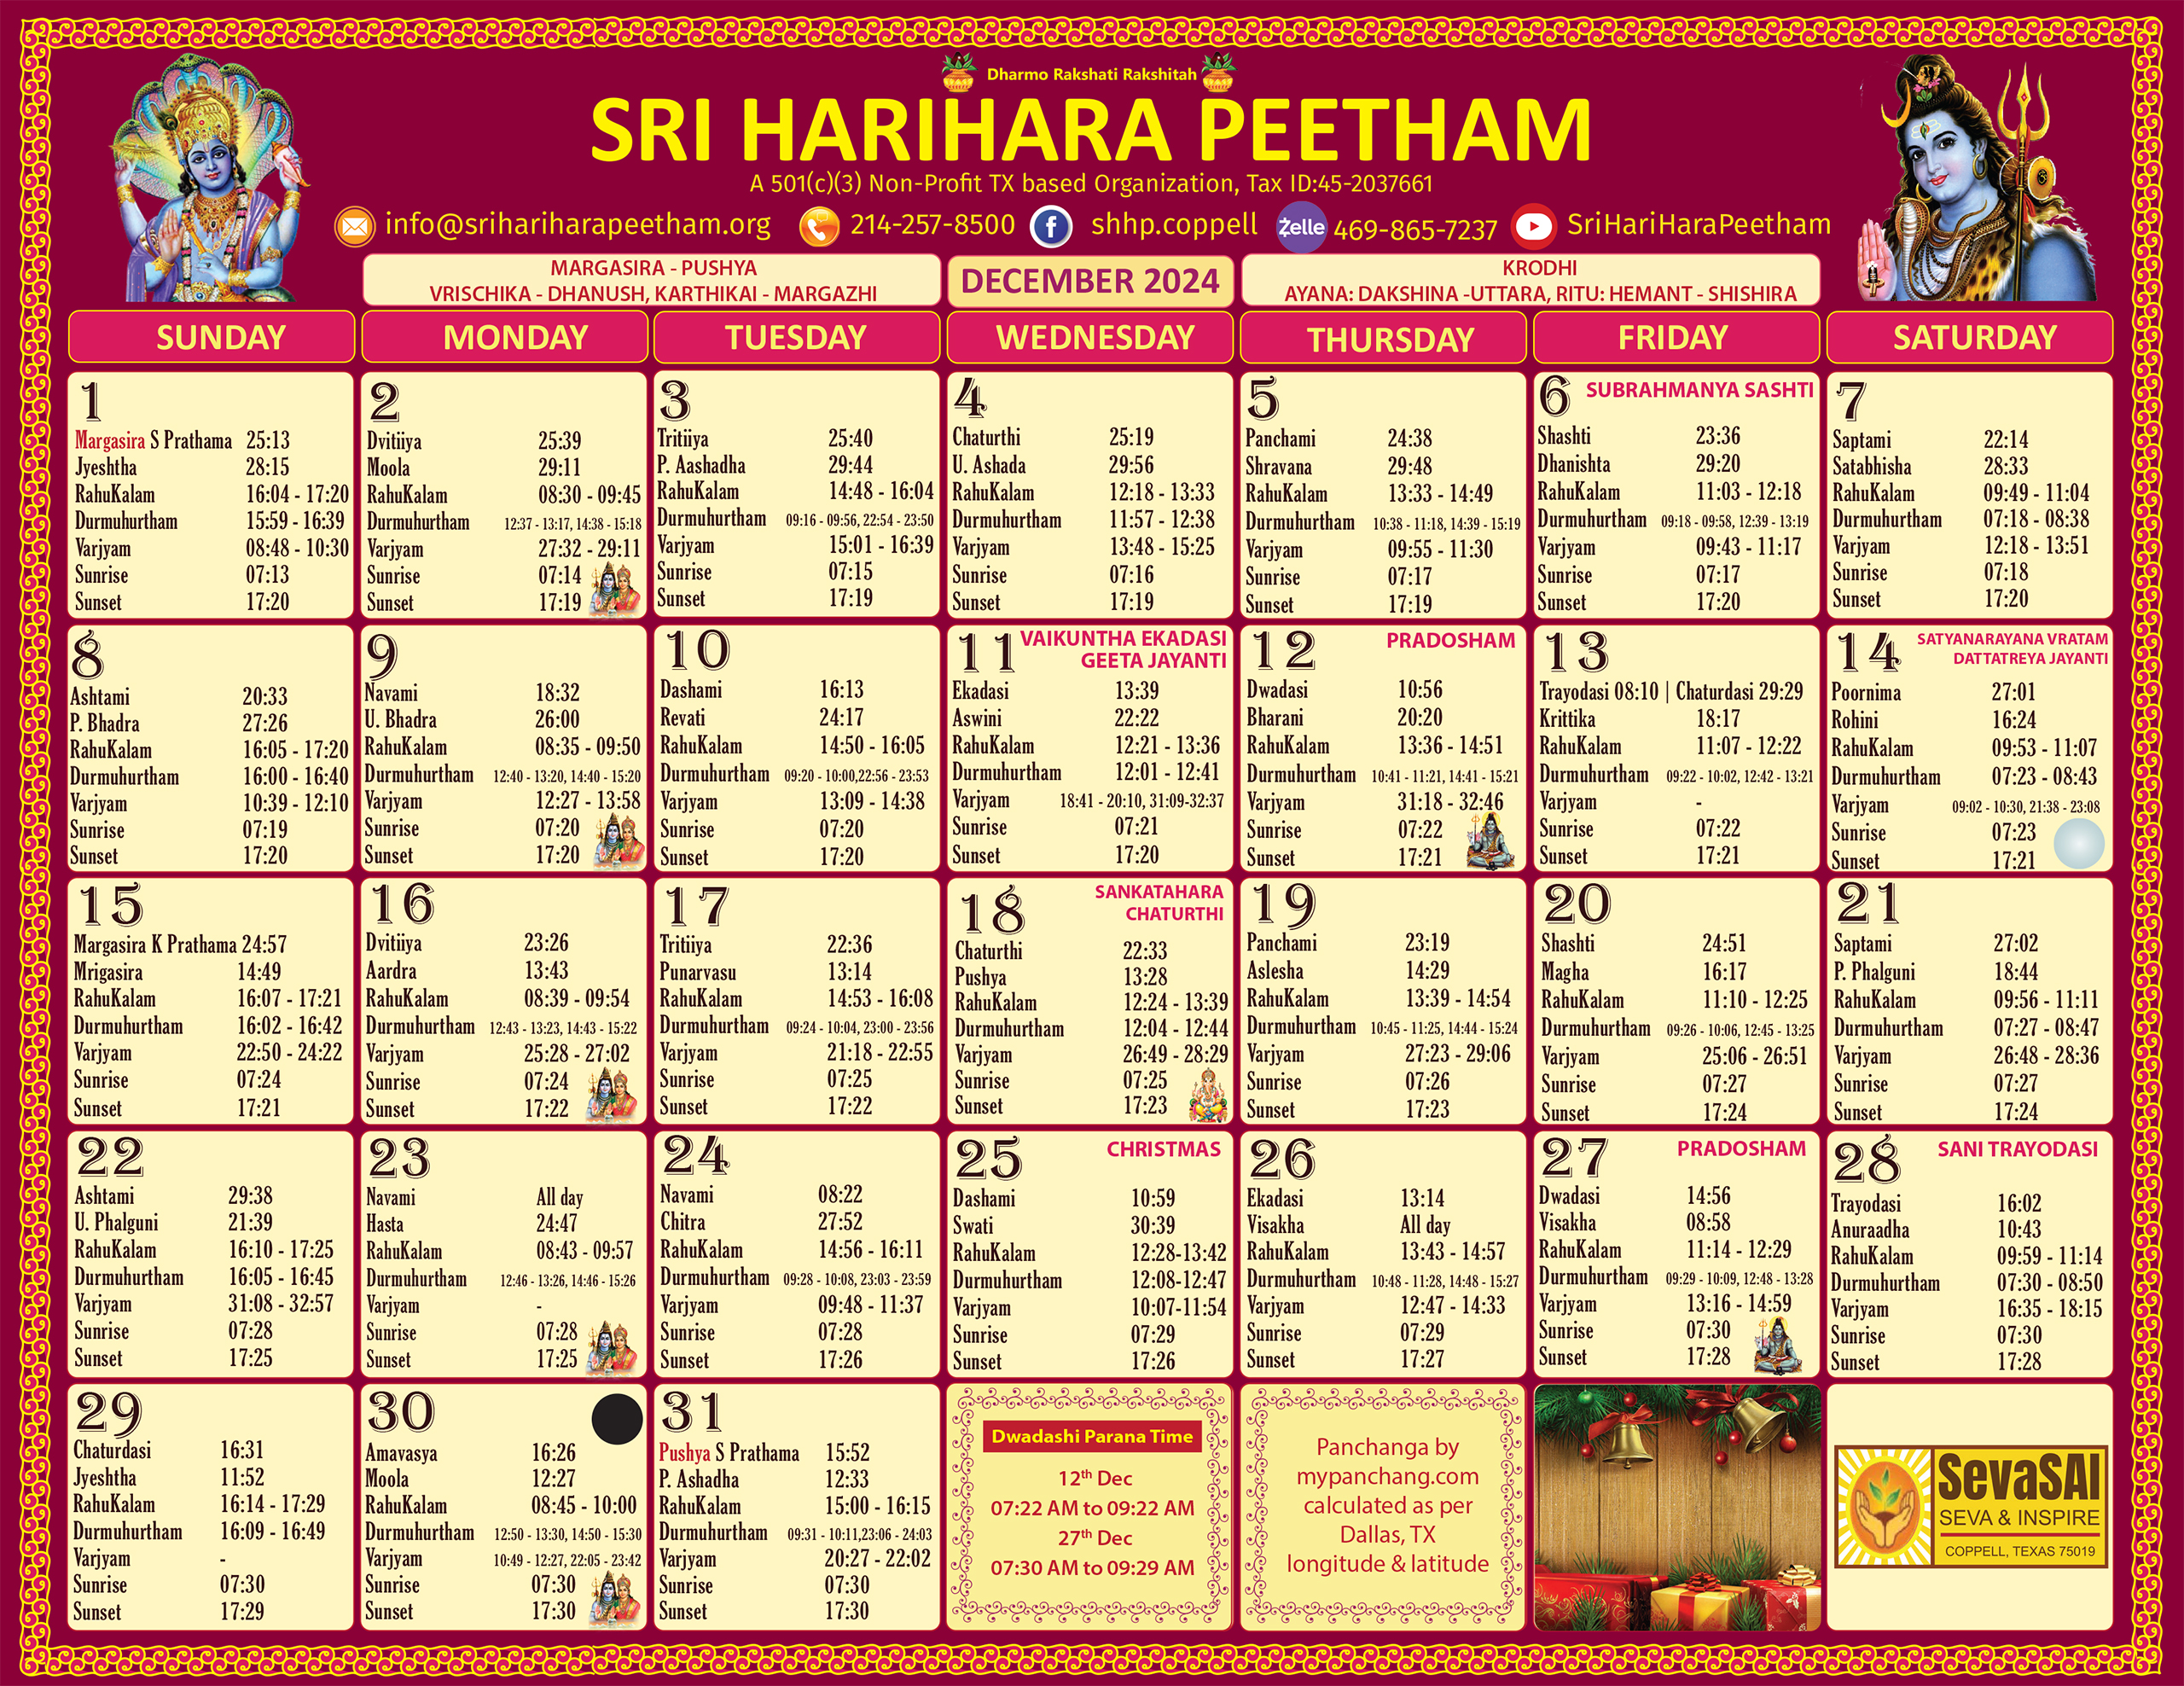 Sri HariHara Peetham's December 2024 calendar page